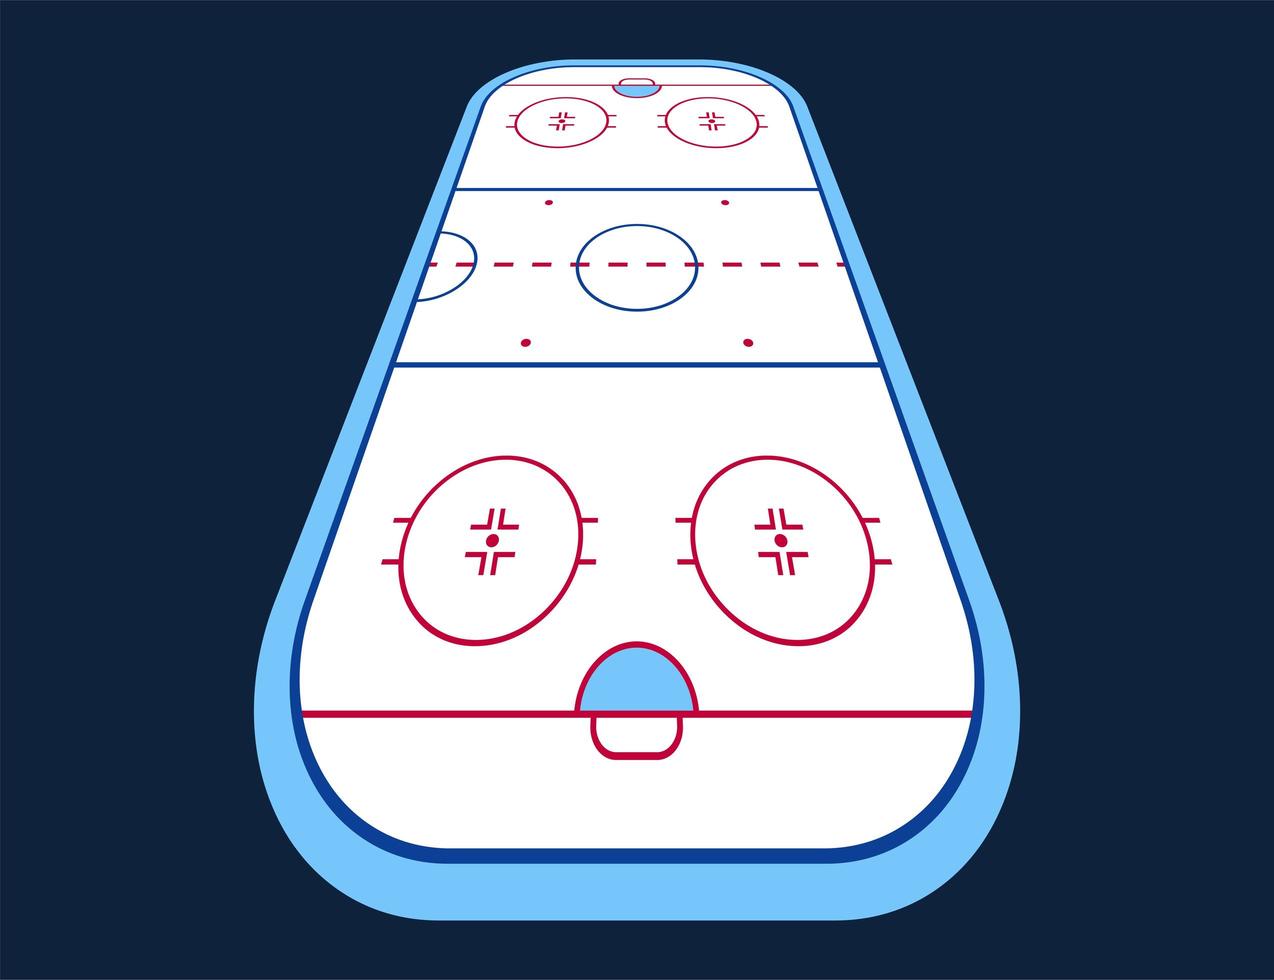 vector de perspectiva de la pista de hockey sobre hielo. texturas hielo azul. Pista de hielo. vista superior. fondo de ilustración vectorial.